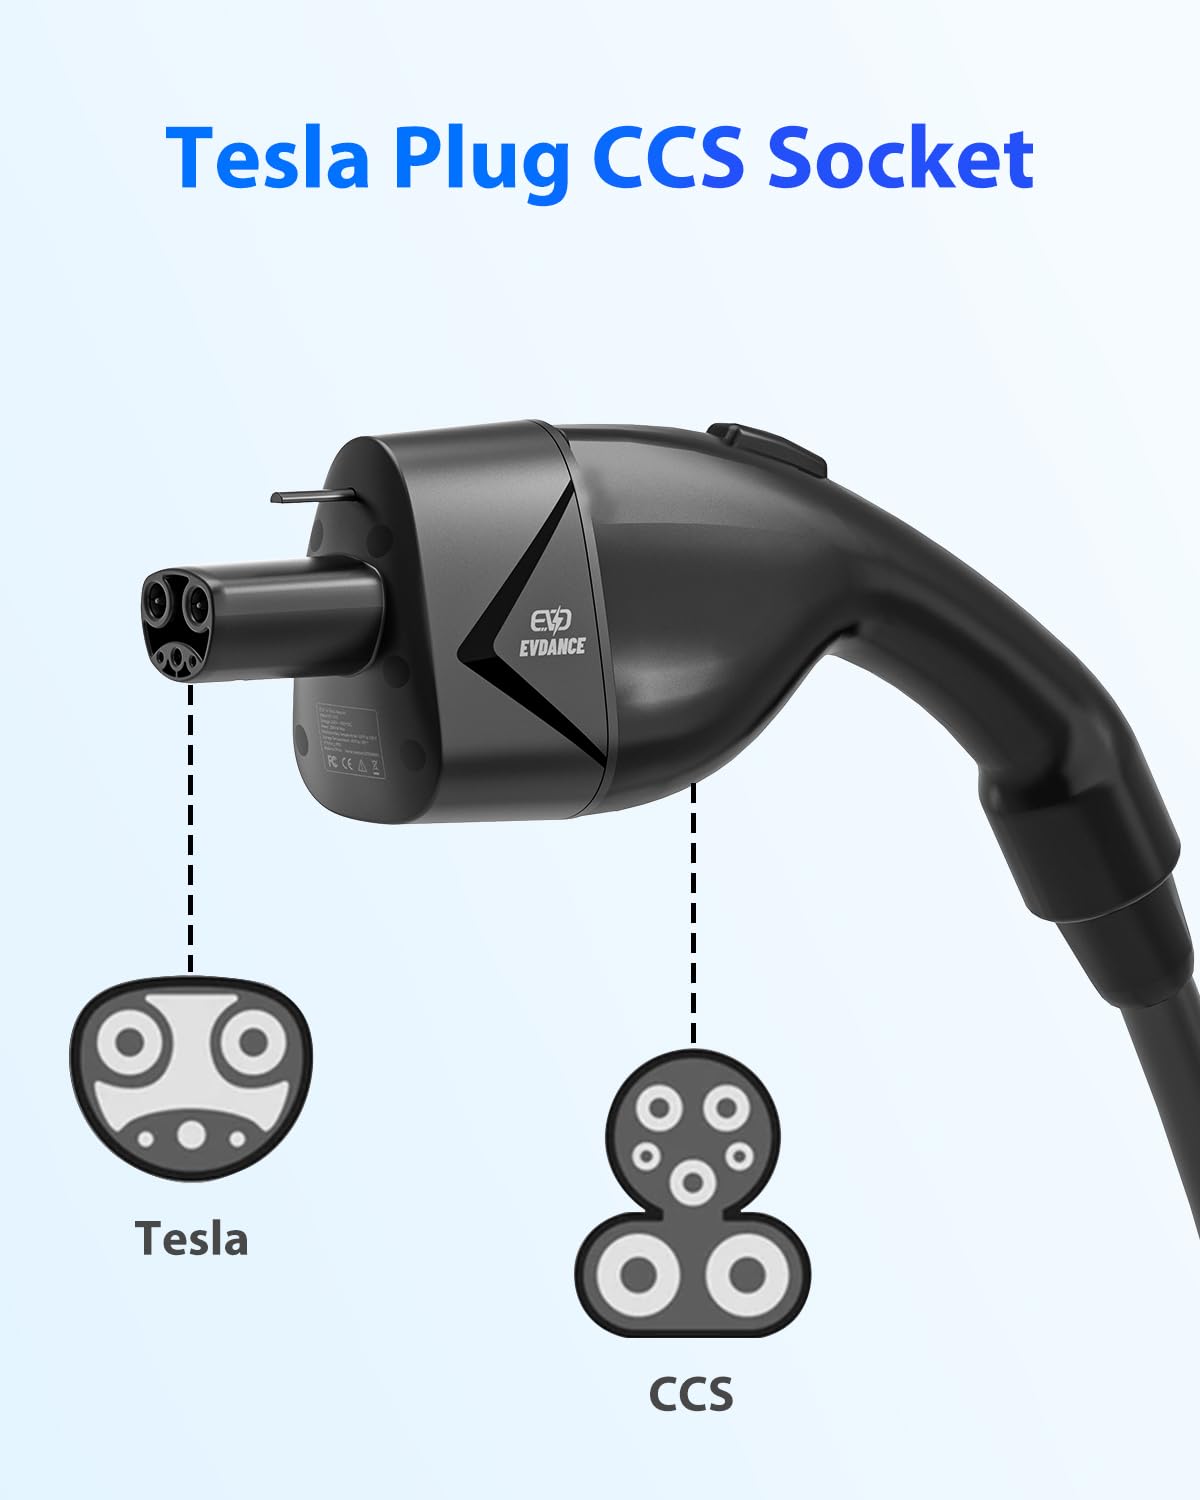 Tesla Plug CCS socket charger to car